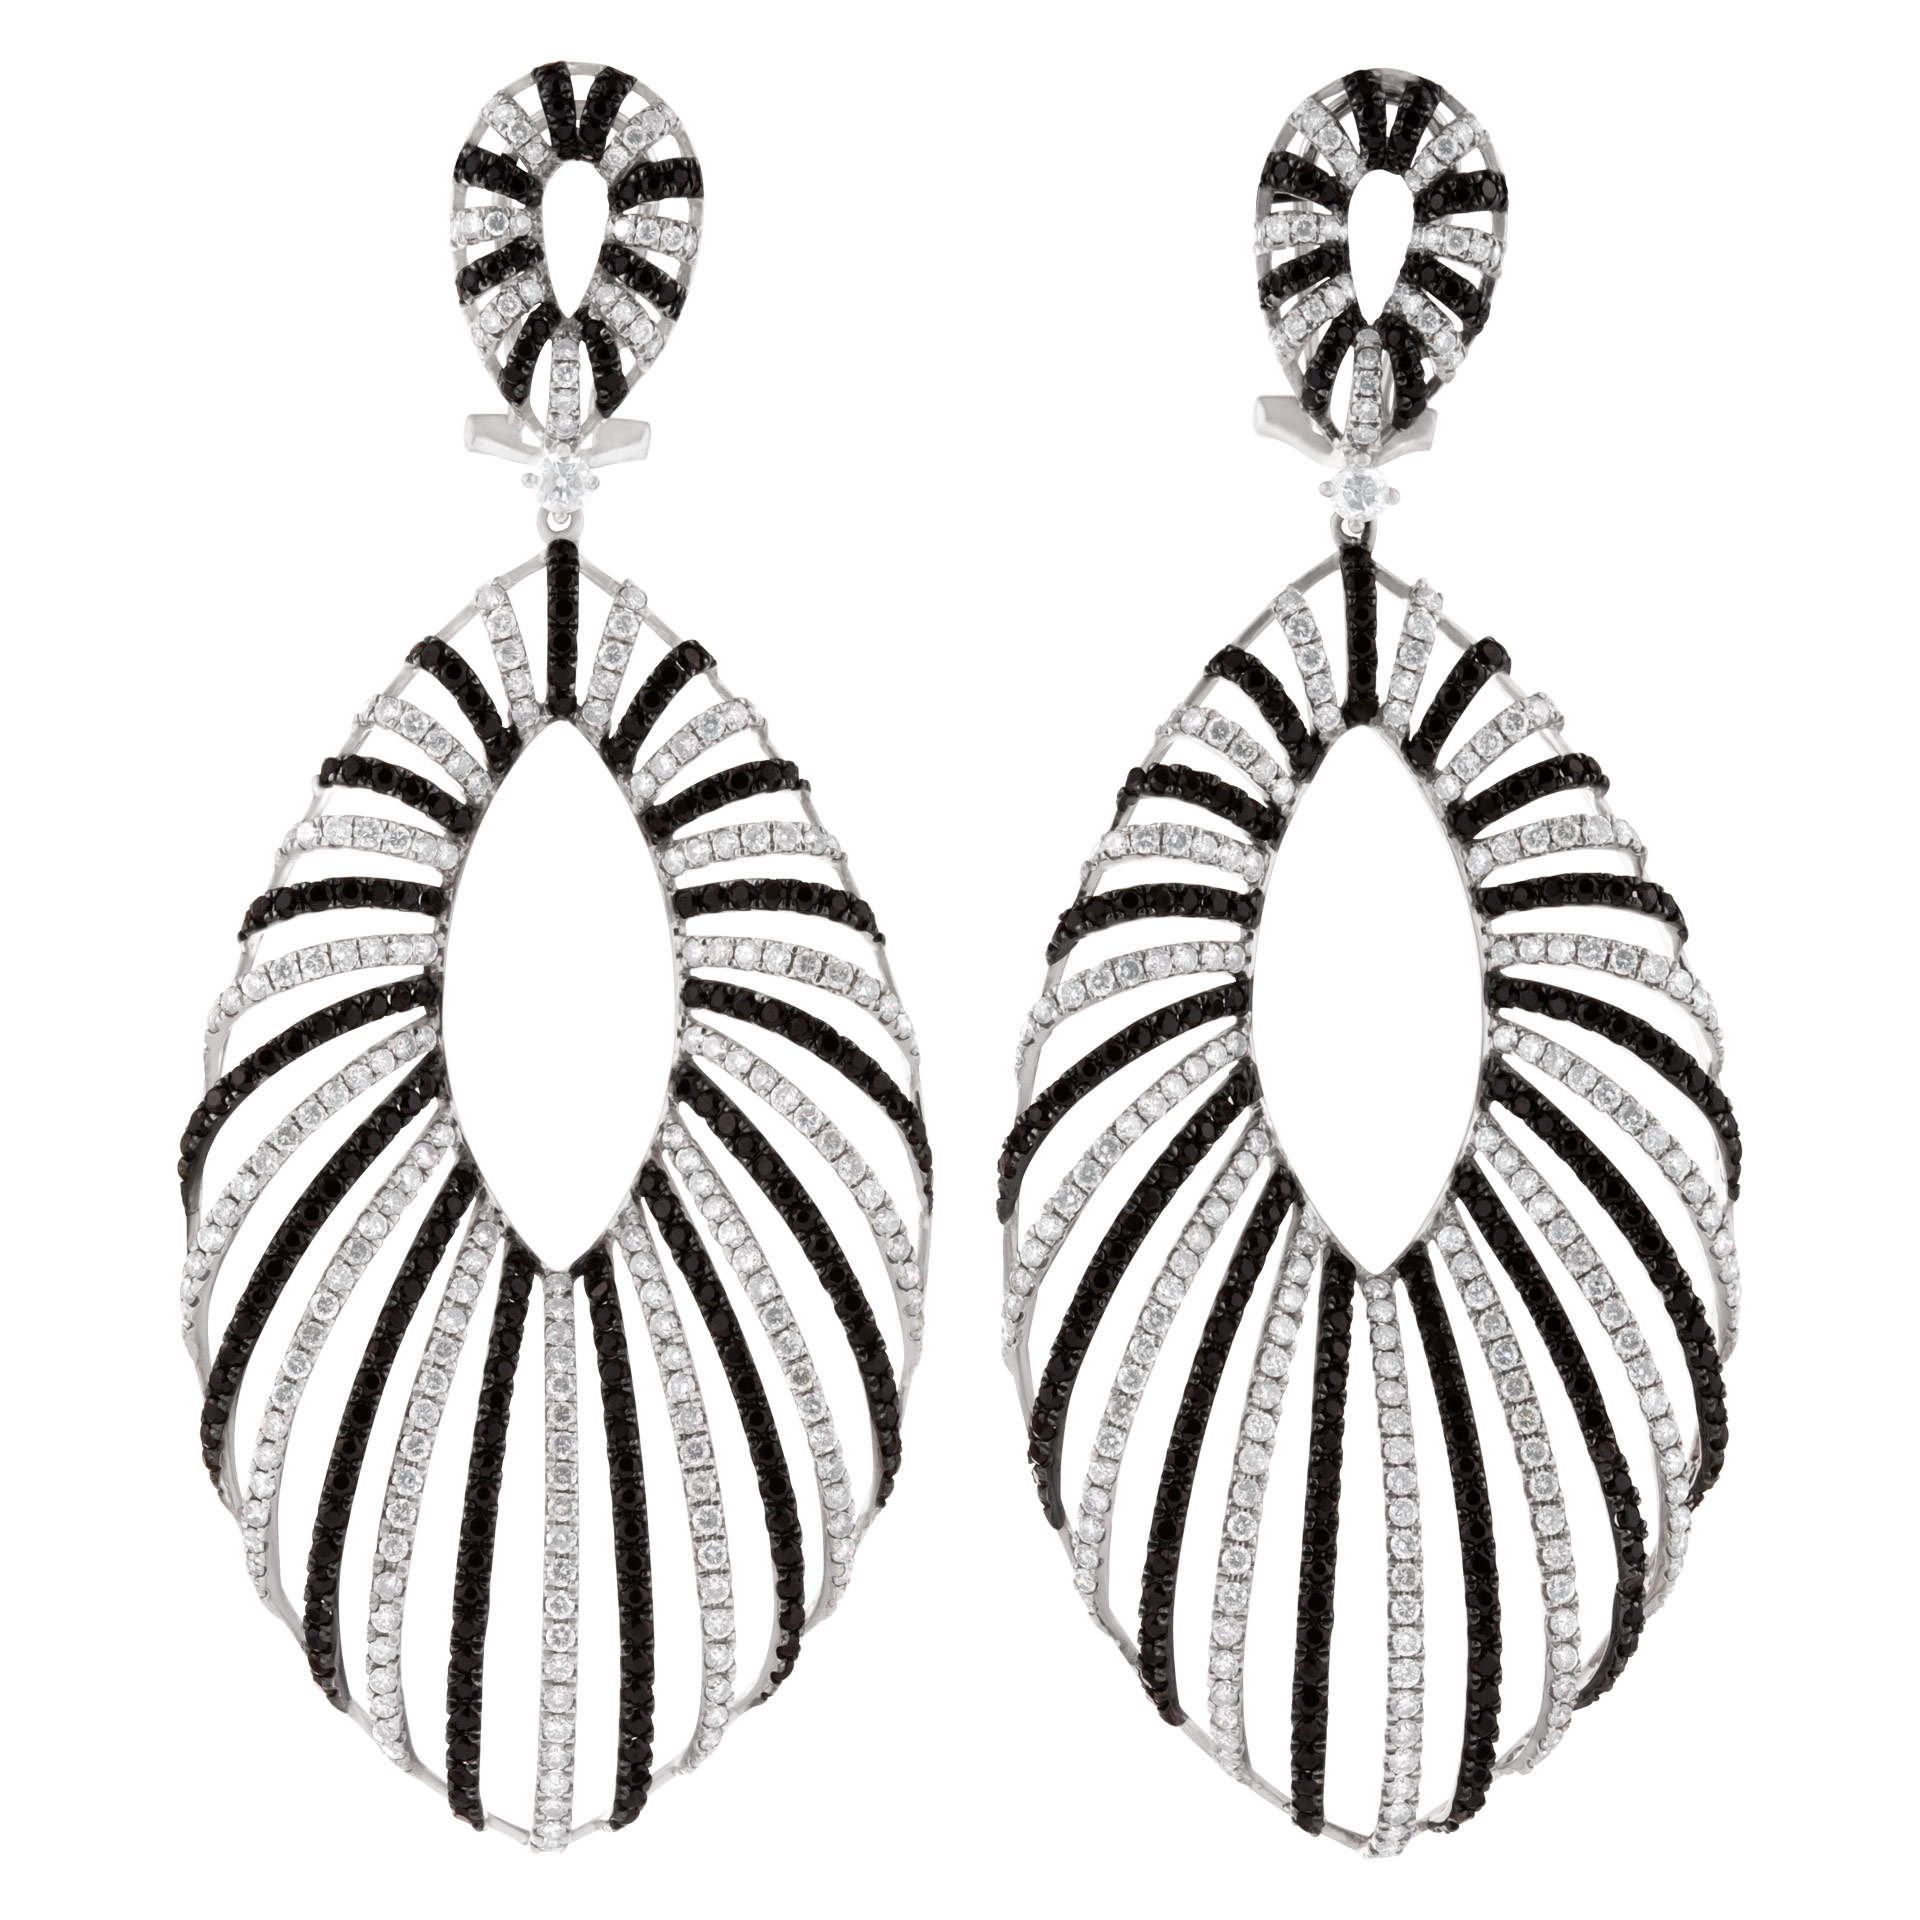 Black & white diamond swirl drop earrings